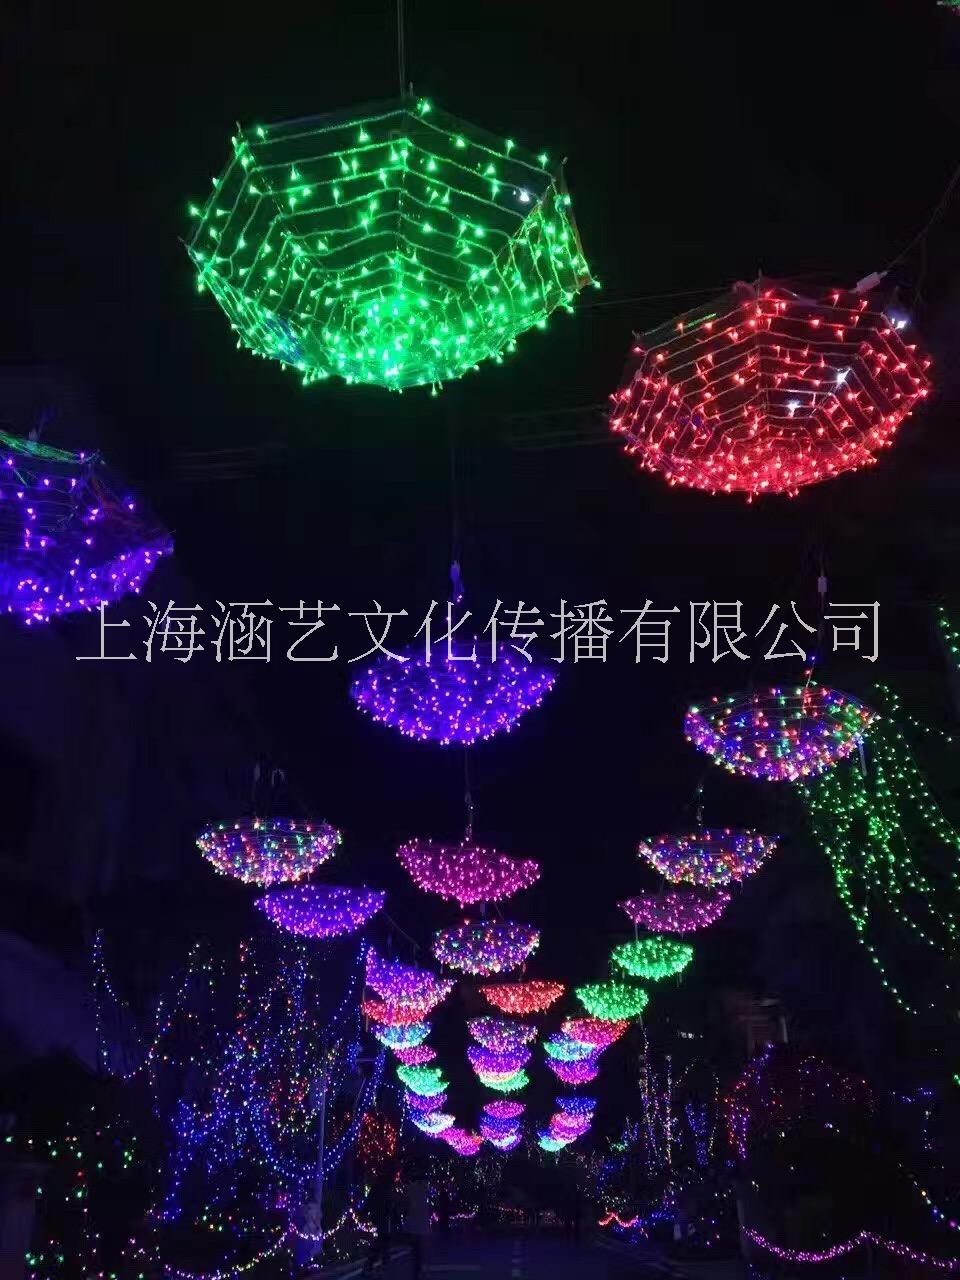 灯光节 灯光展 上海涵艺文化提供 重庆灯光节图片